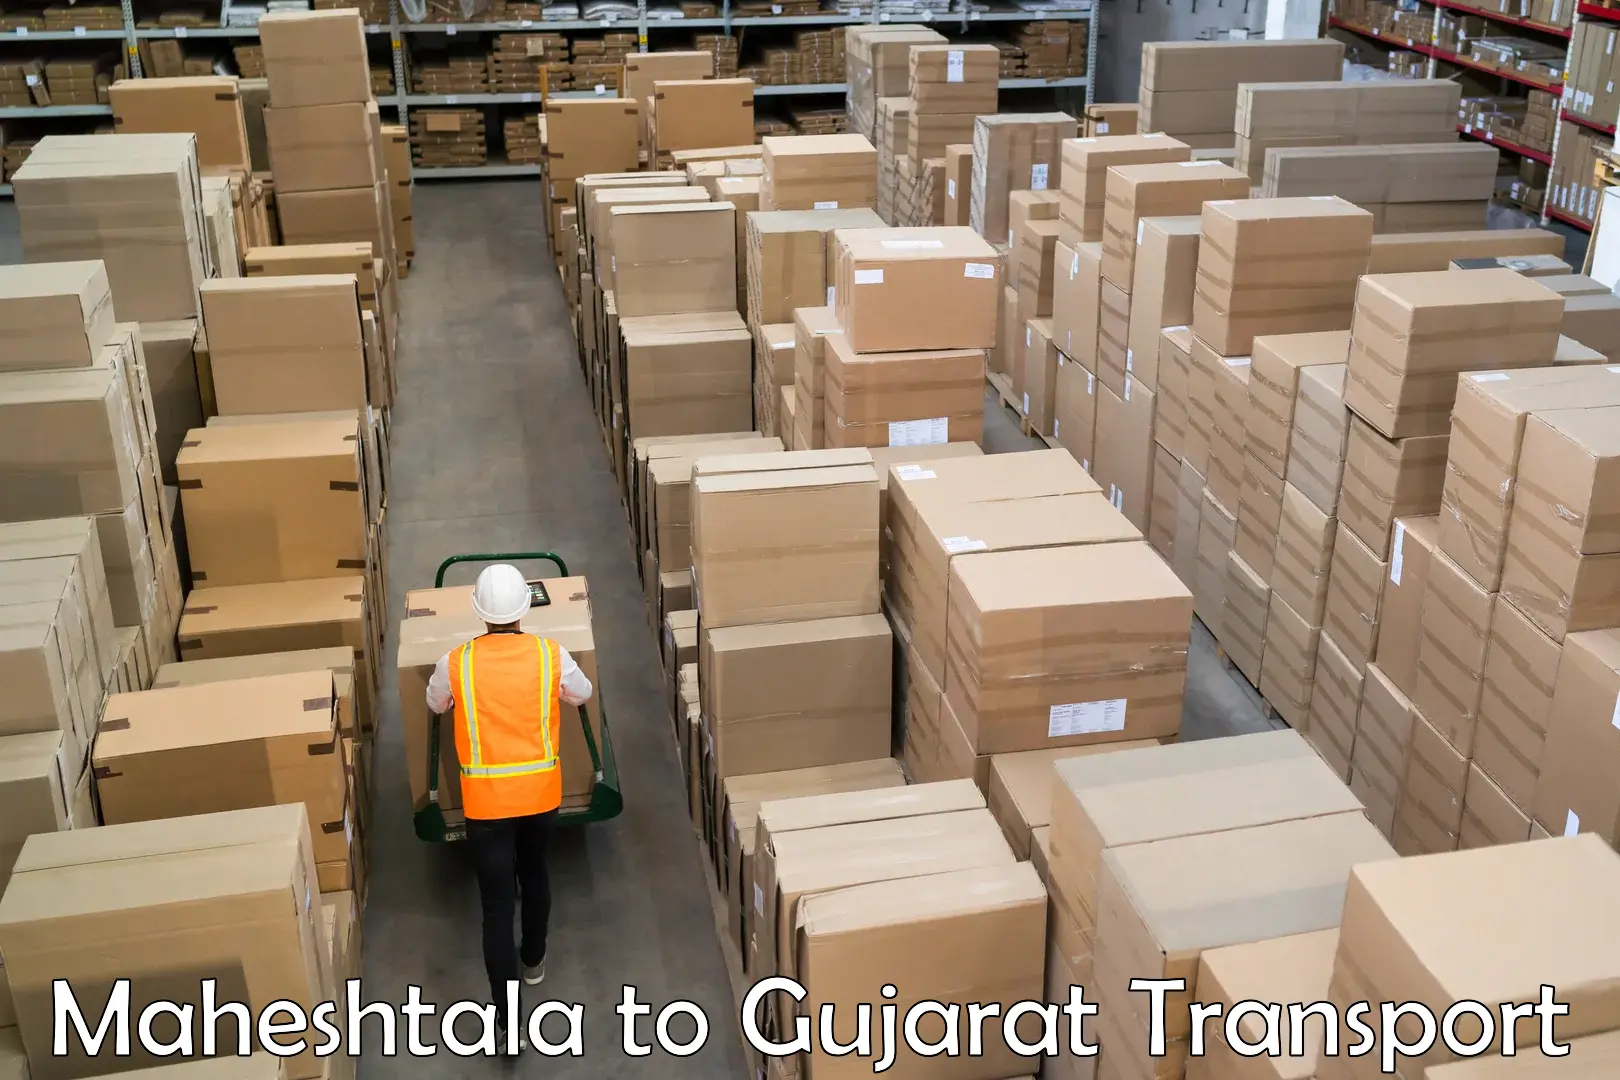 Delivery service Maheshtala to Ahmedabad